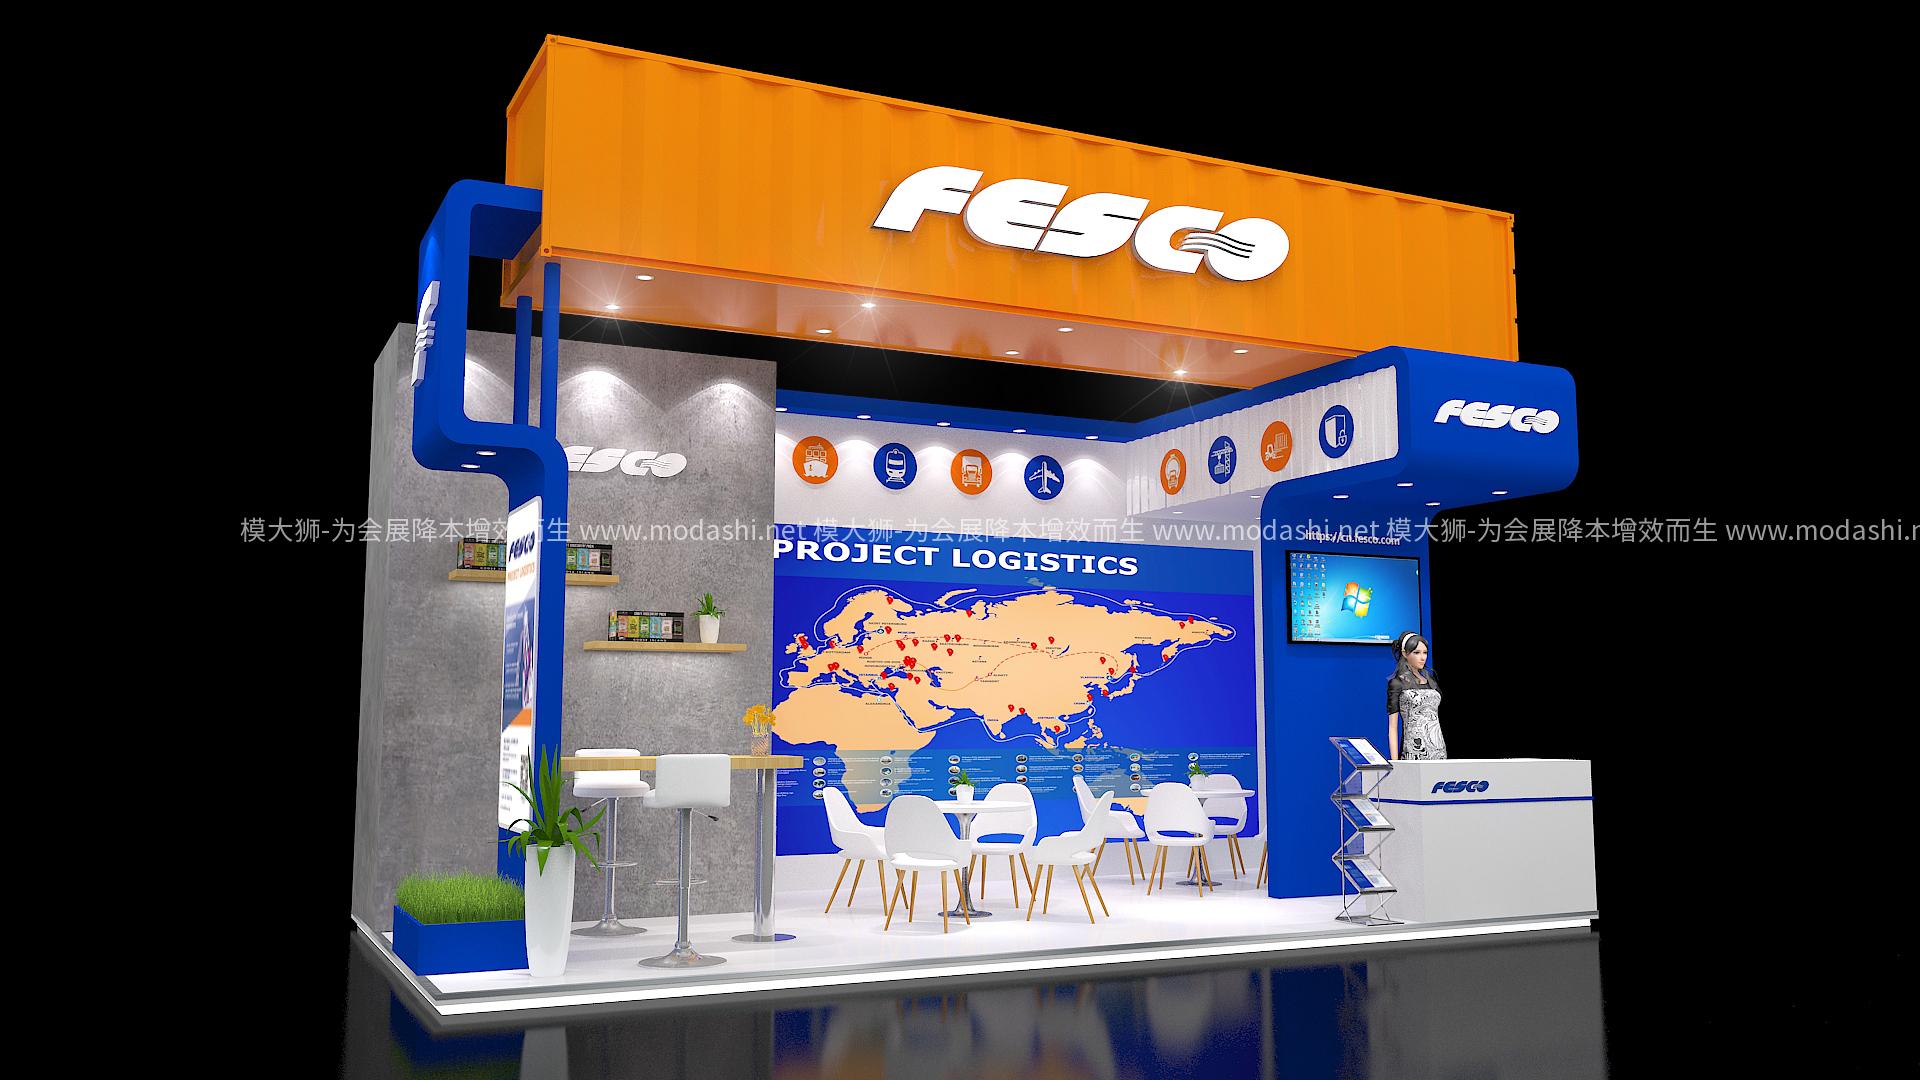 FESCO展览展示展台模型